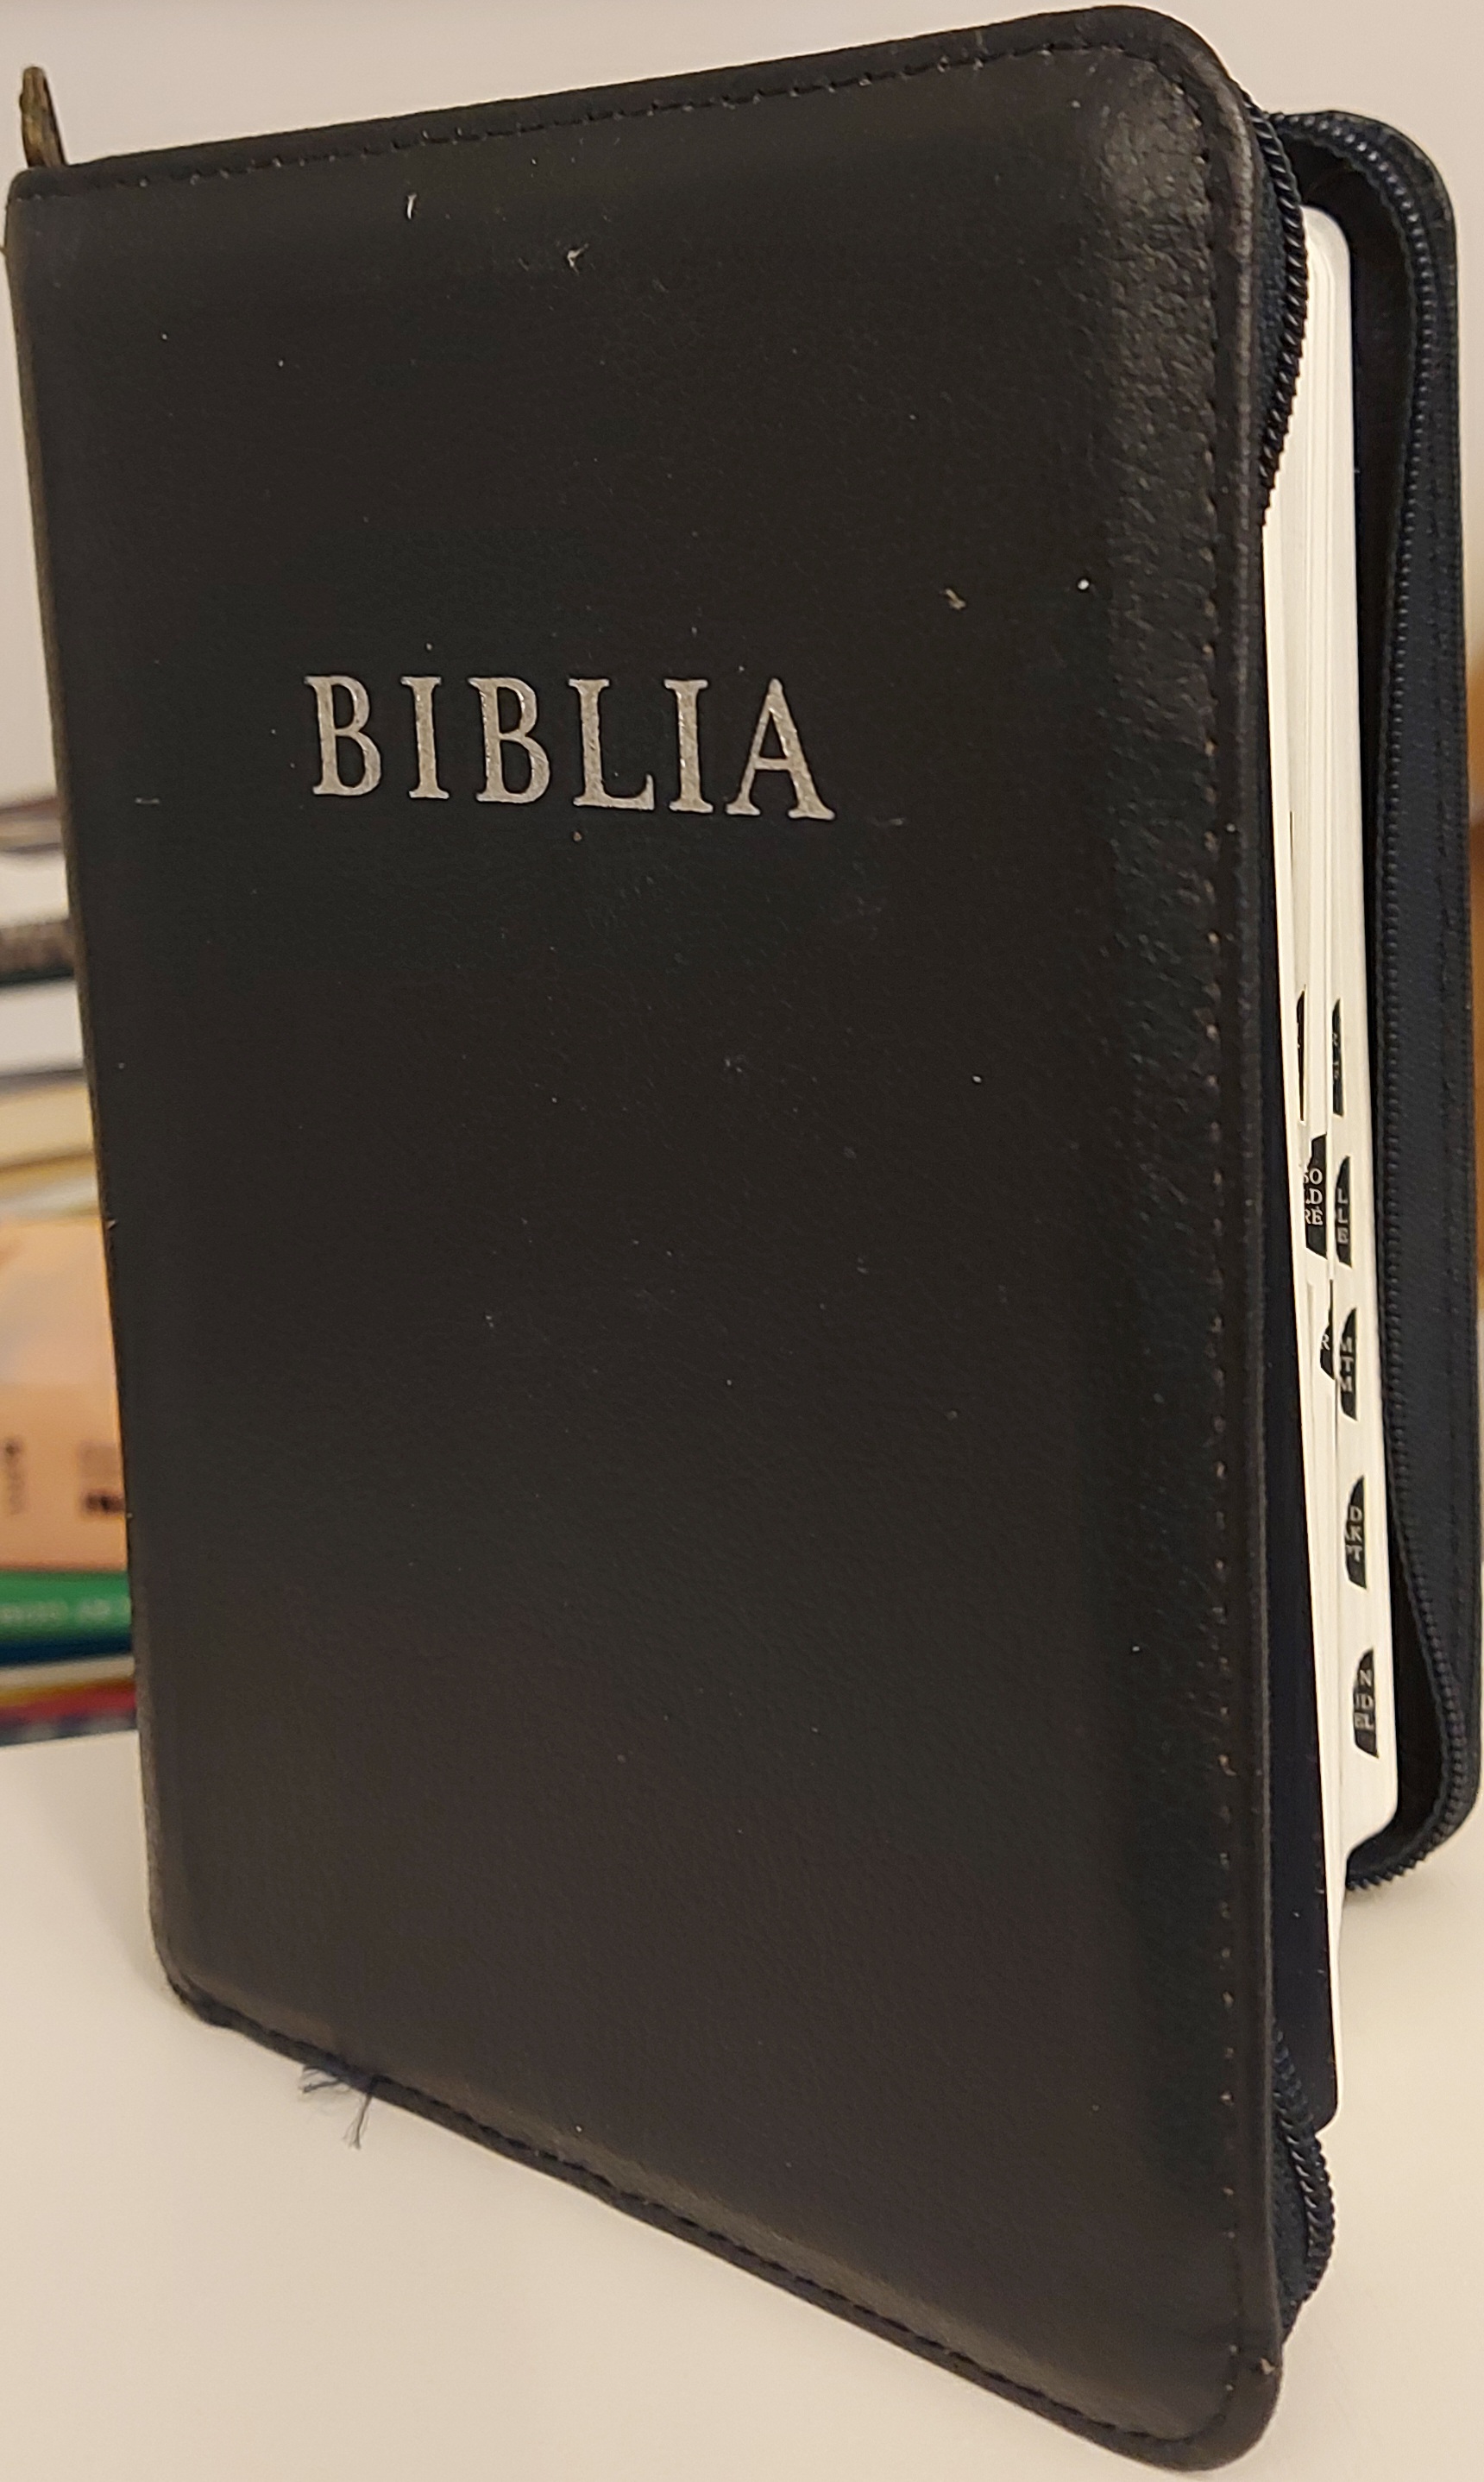 Biblia revideált új fordítás, közepes, bőrkötéses, cippzáras, regiszteres, ezüst élmetszéssel